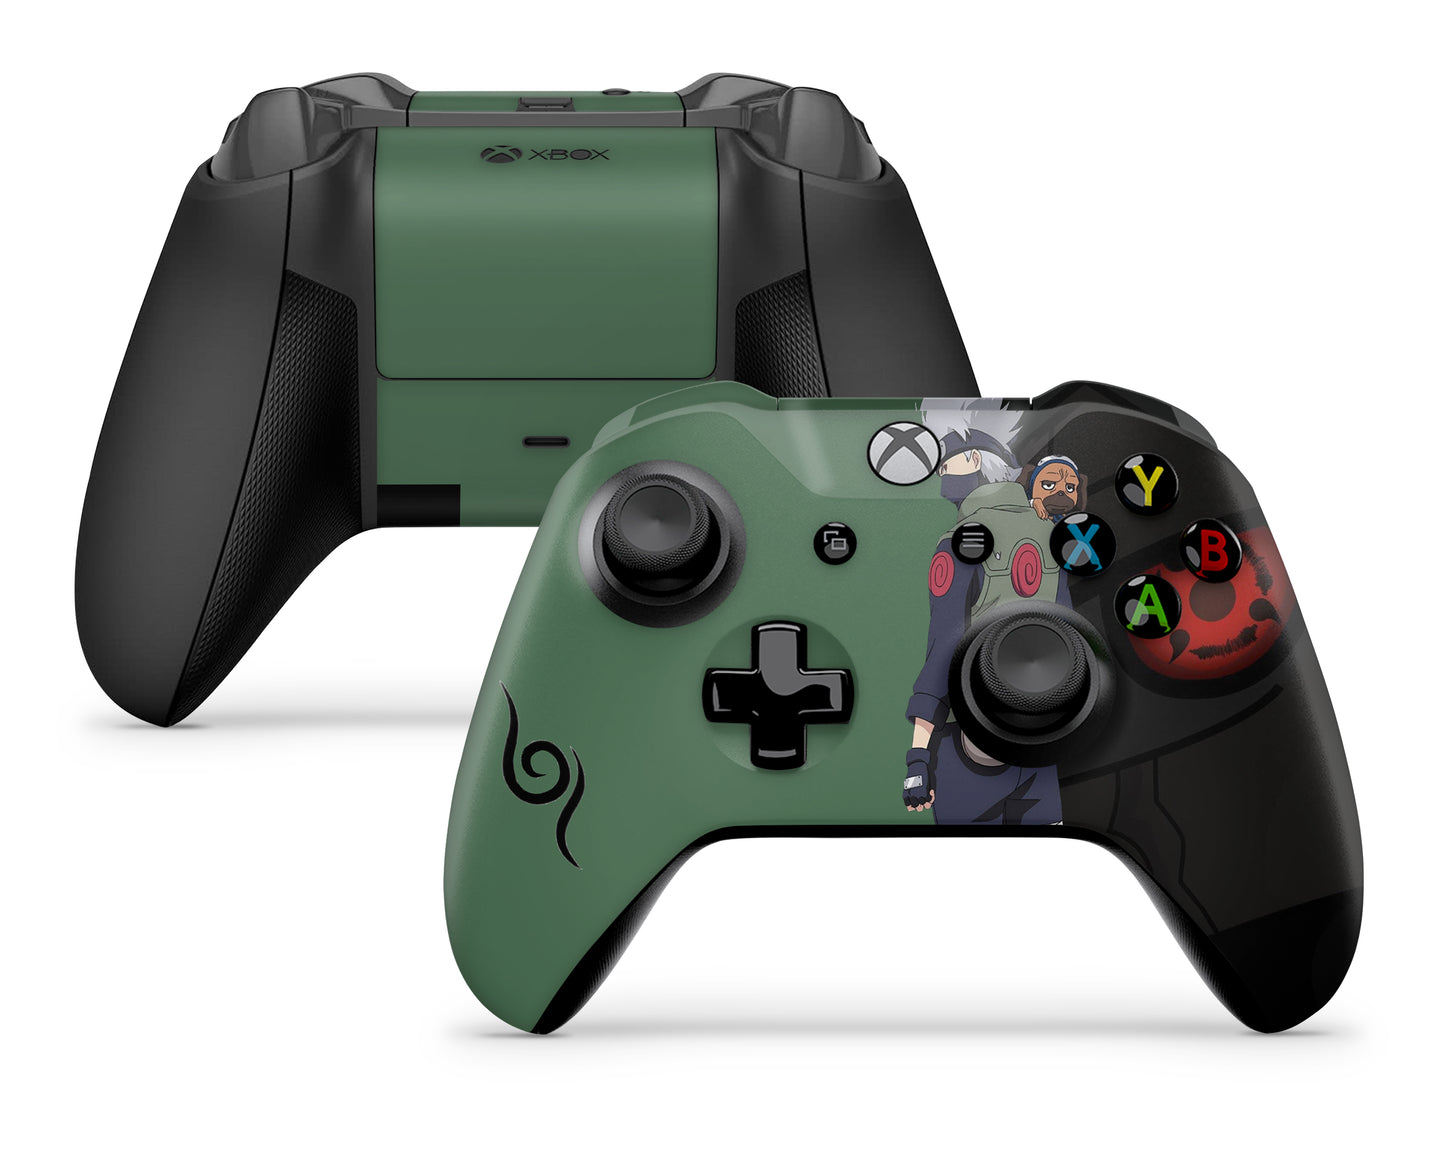 Kakashi Sharingan Dark x Green Xbox One Controller Skin